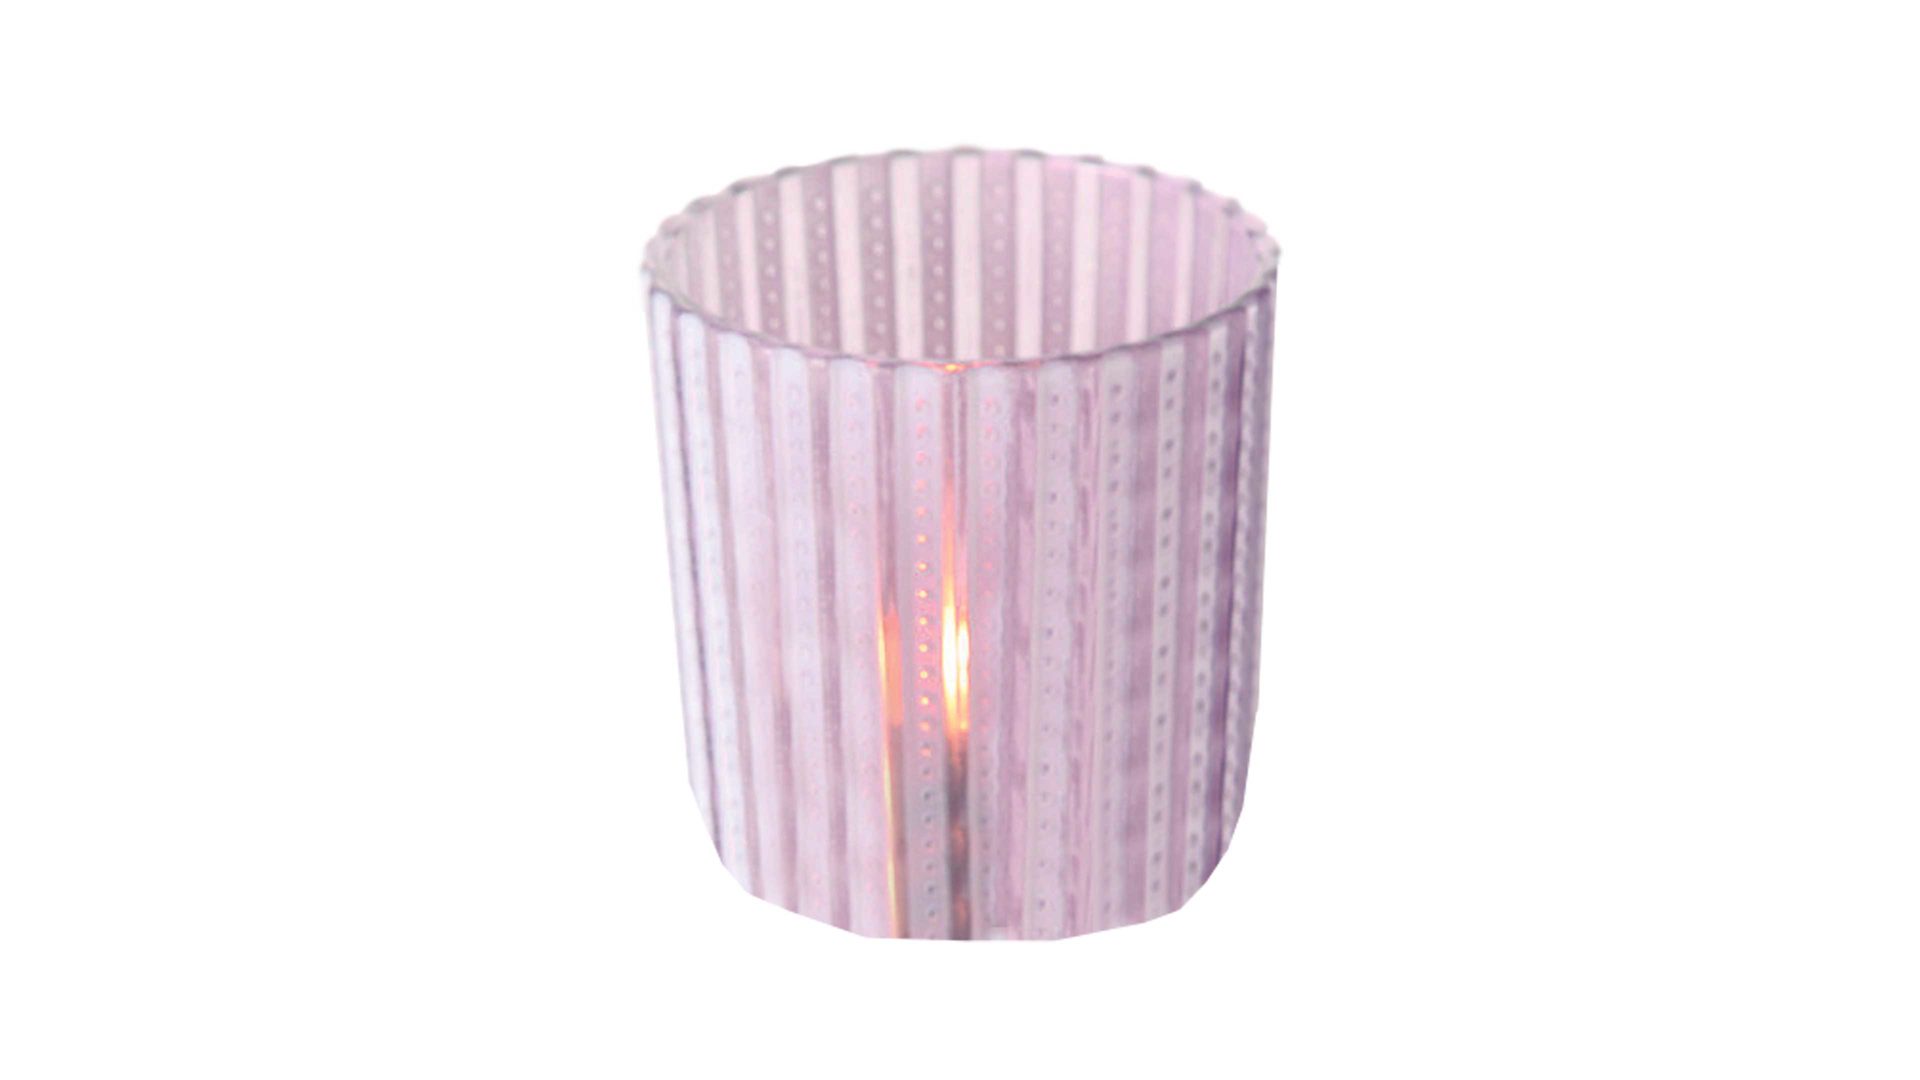 Windlicht Interliving BEST BUDDYS! aus Glas in Pastell Windlicht Patty weiße Streifen, violettes Glas - Höhe ca. 7 cm